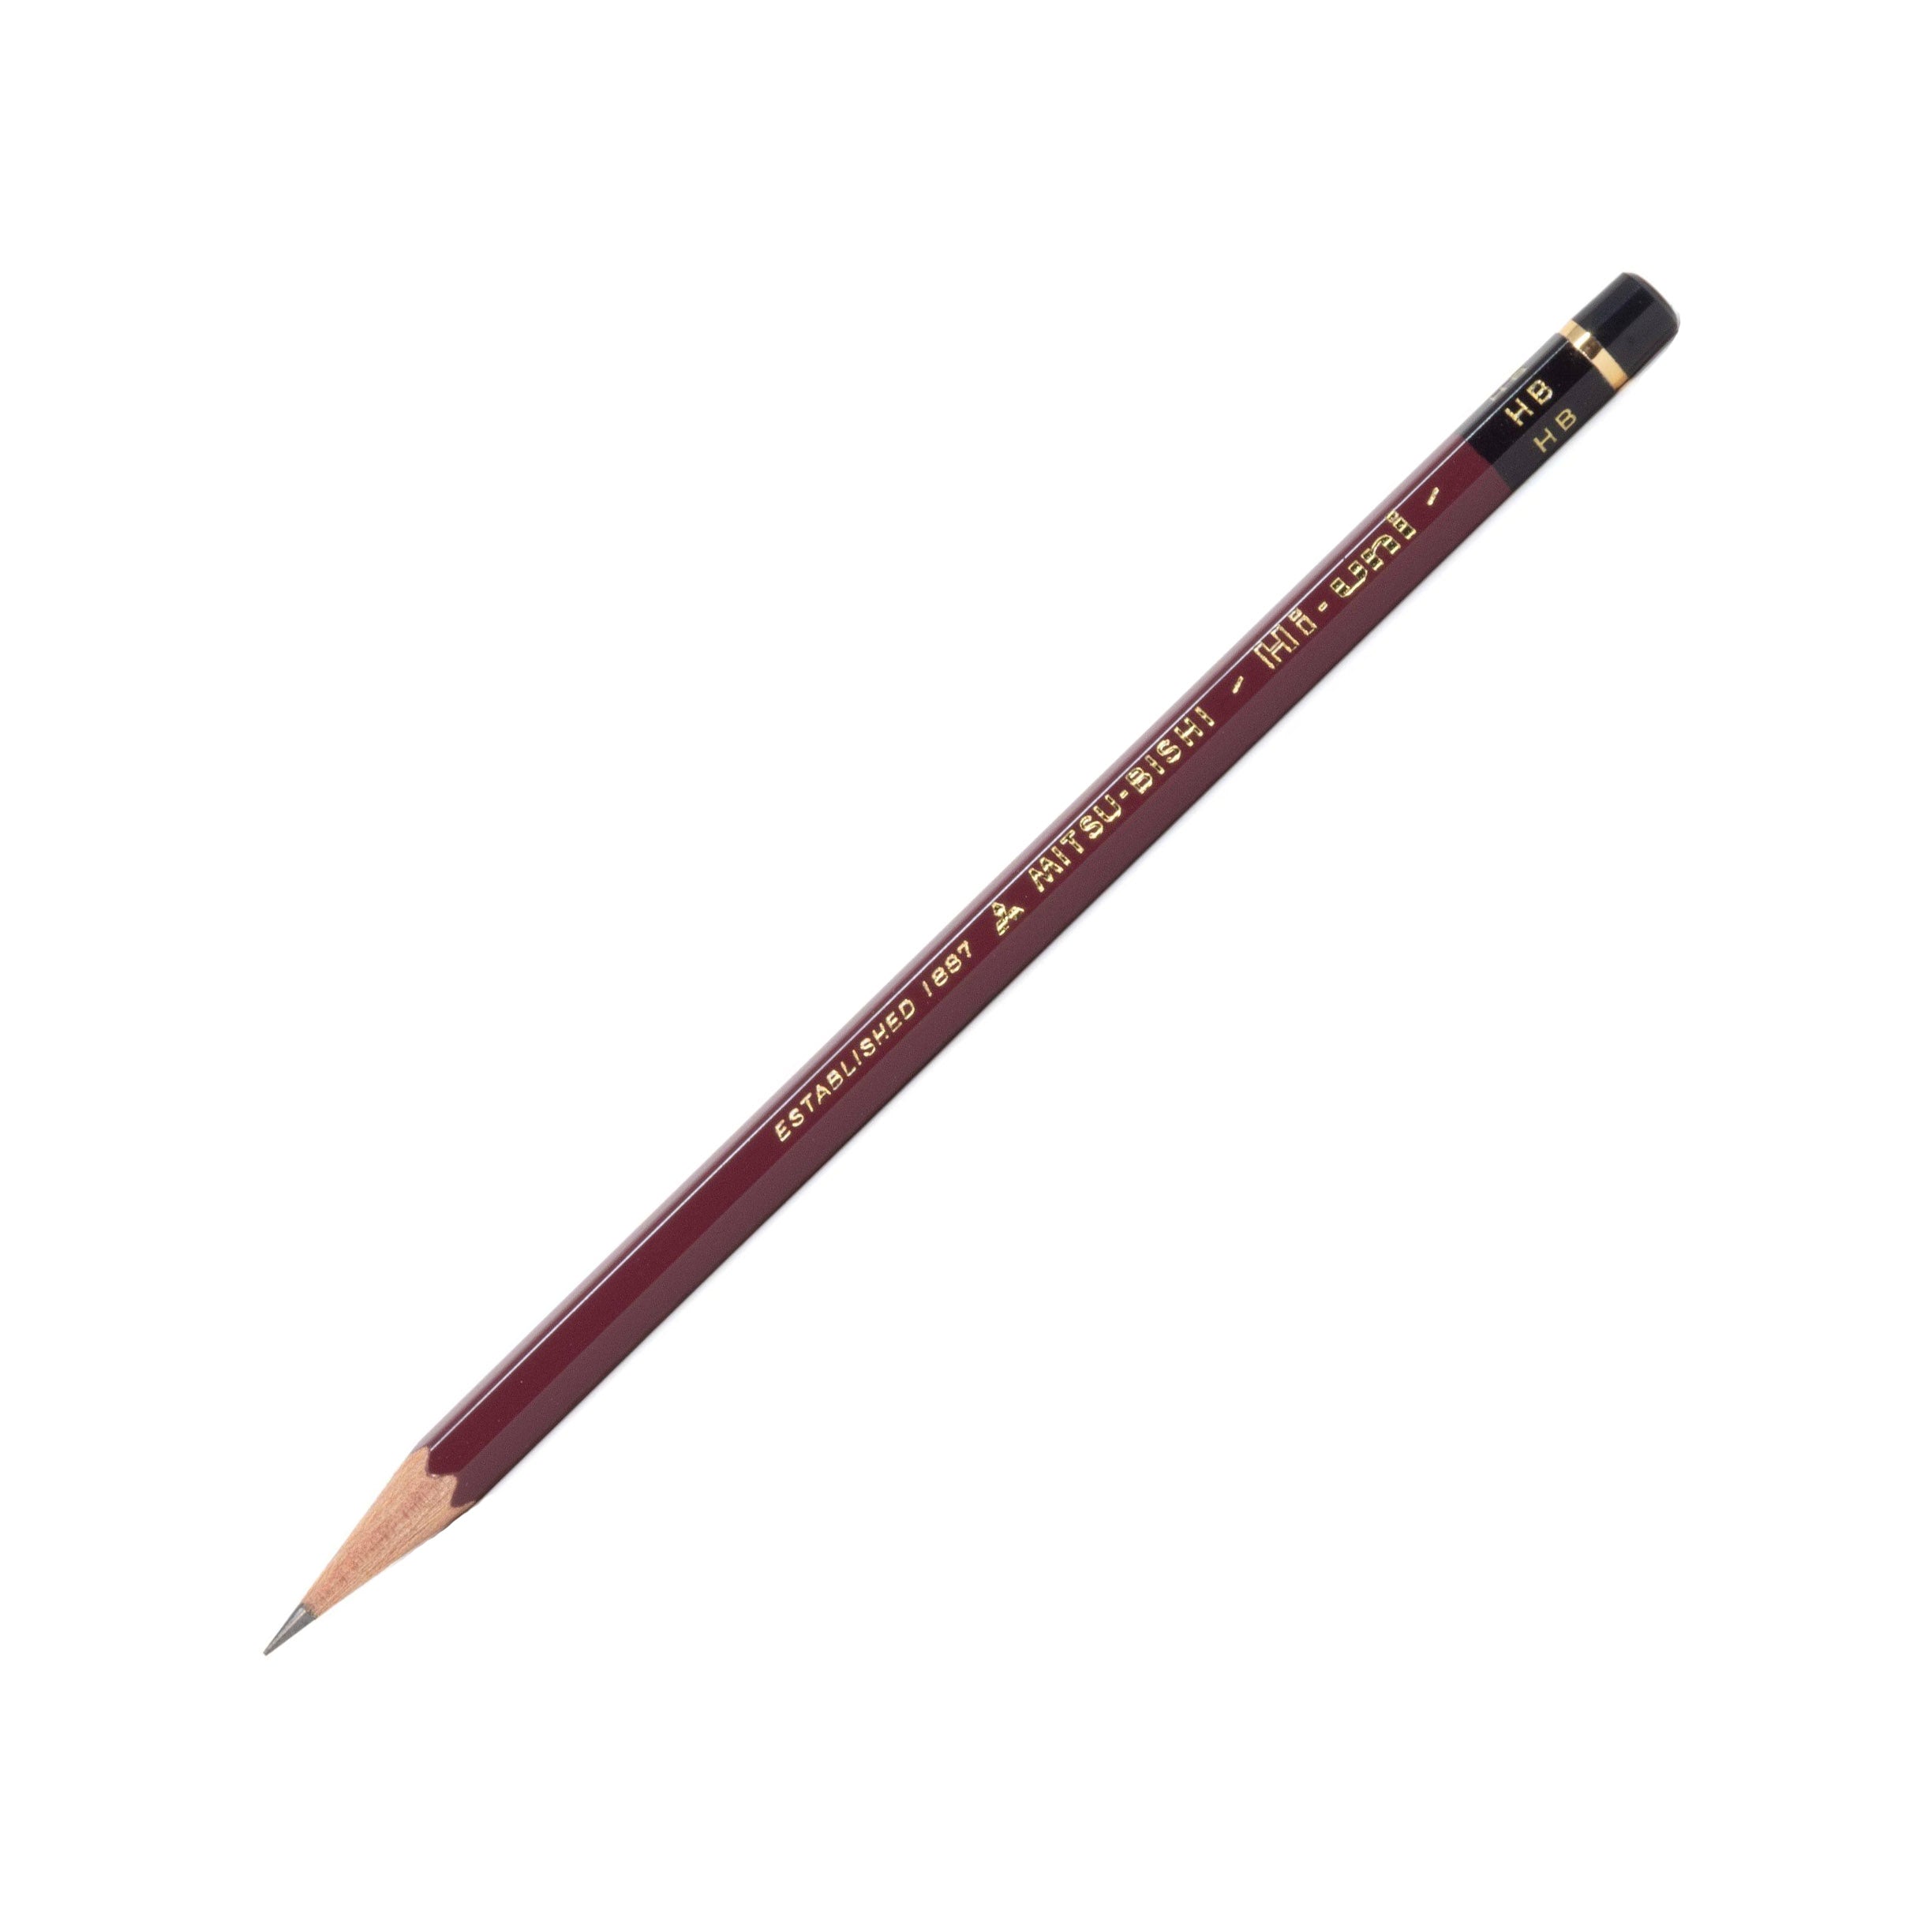 Mitsubishi Hi-Uni Pencil